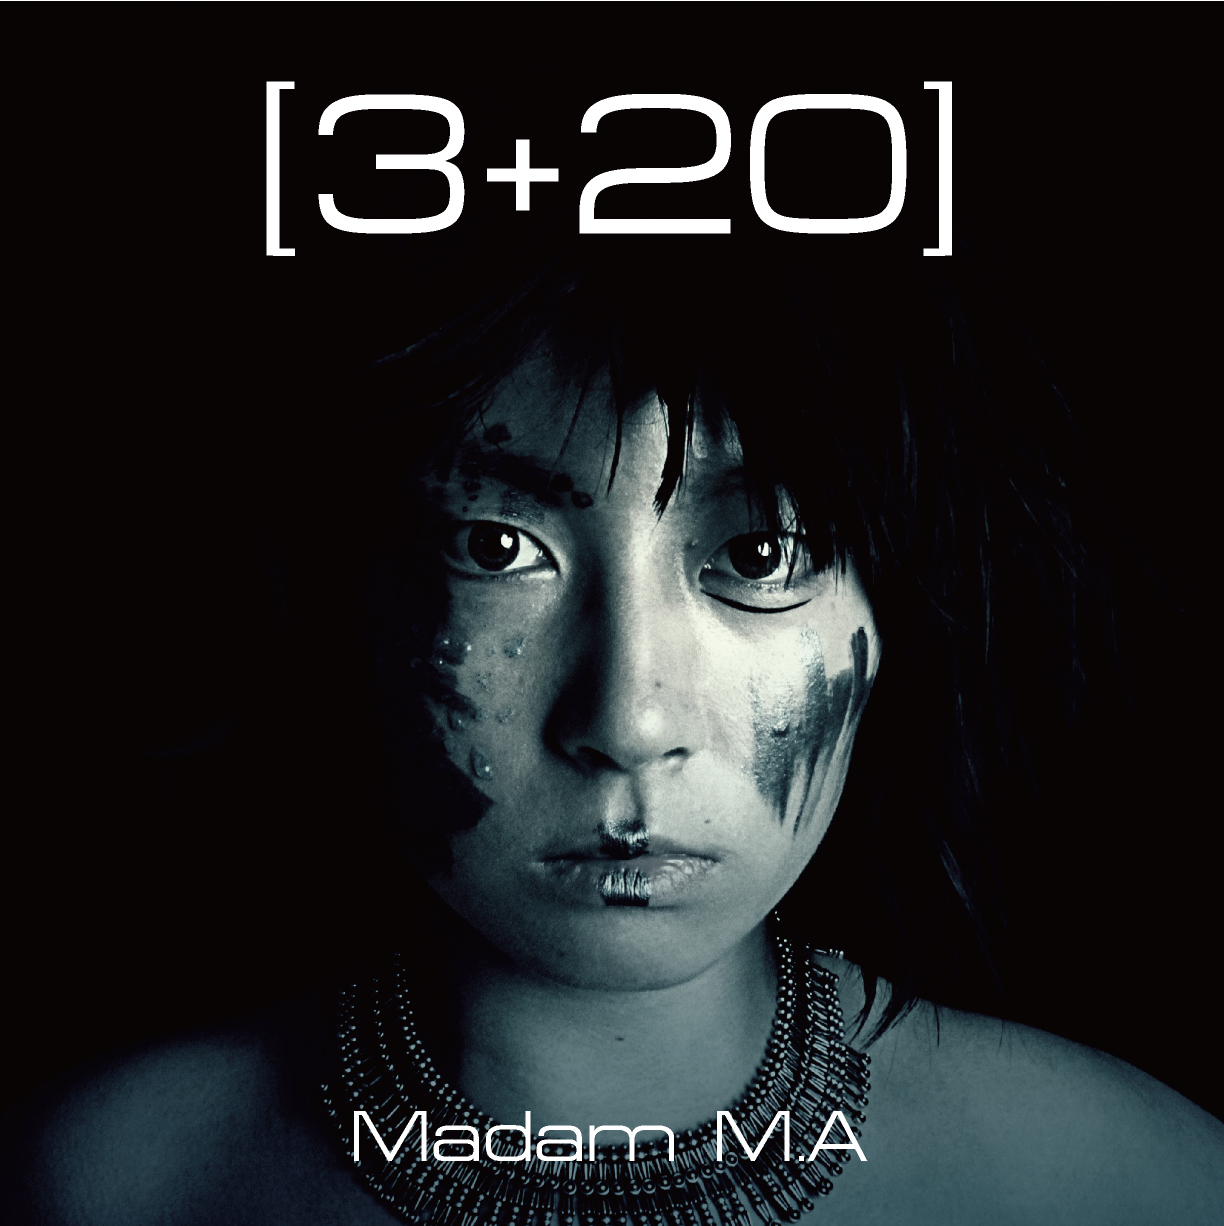 [3+20] Madam M.A